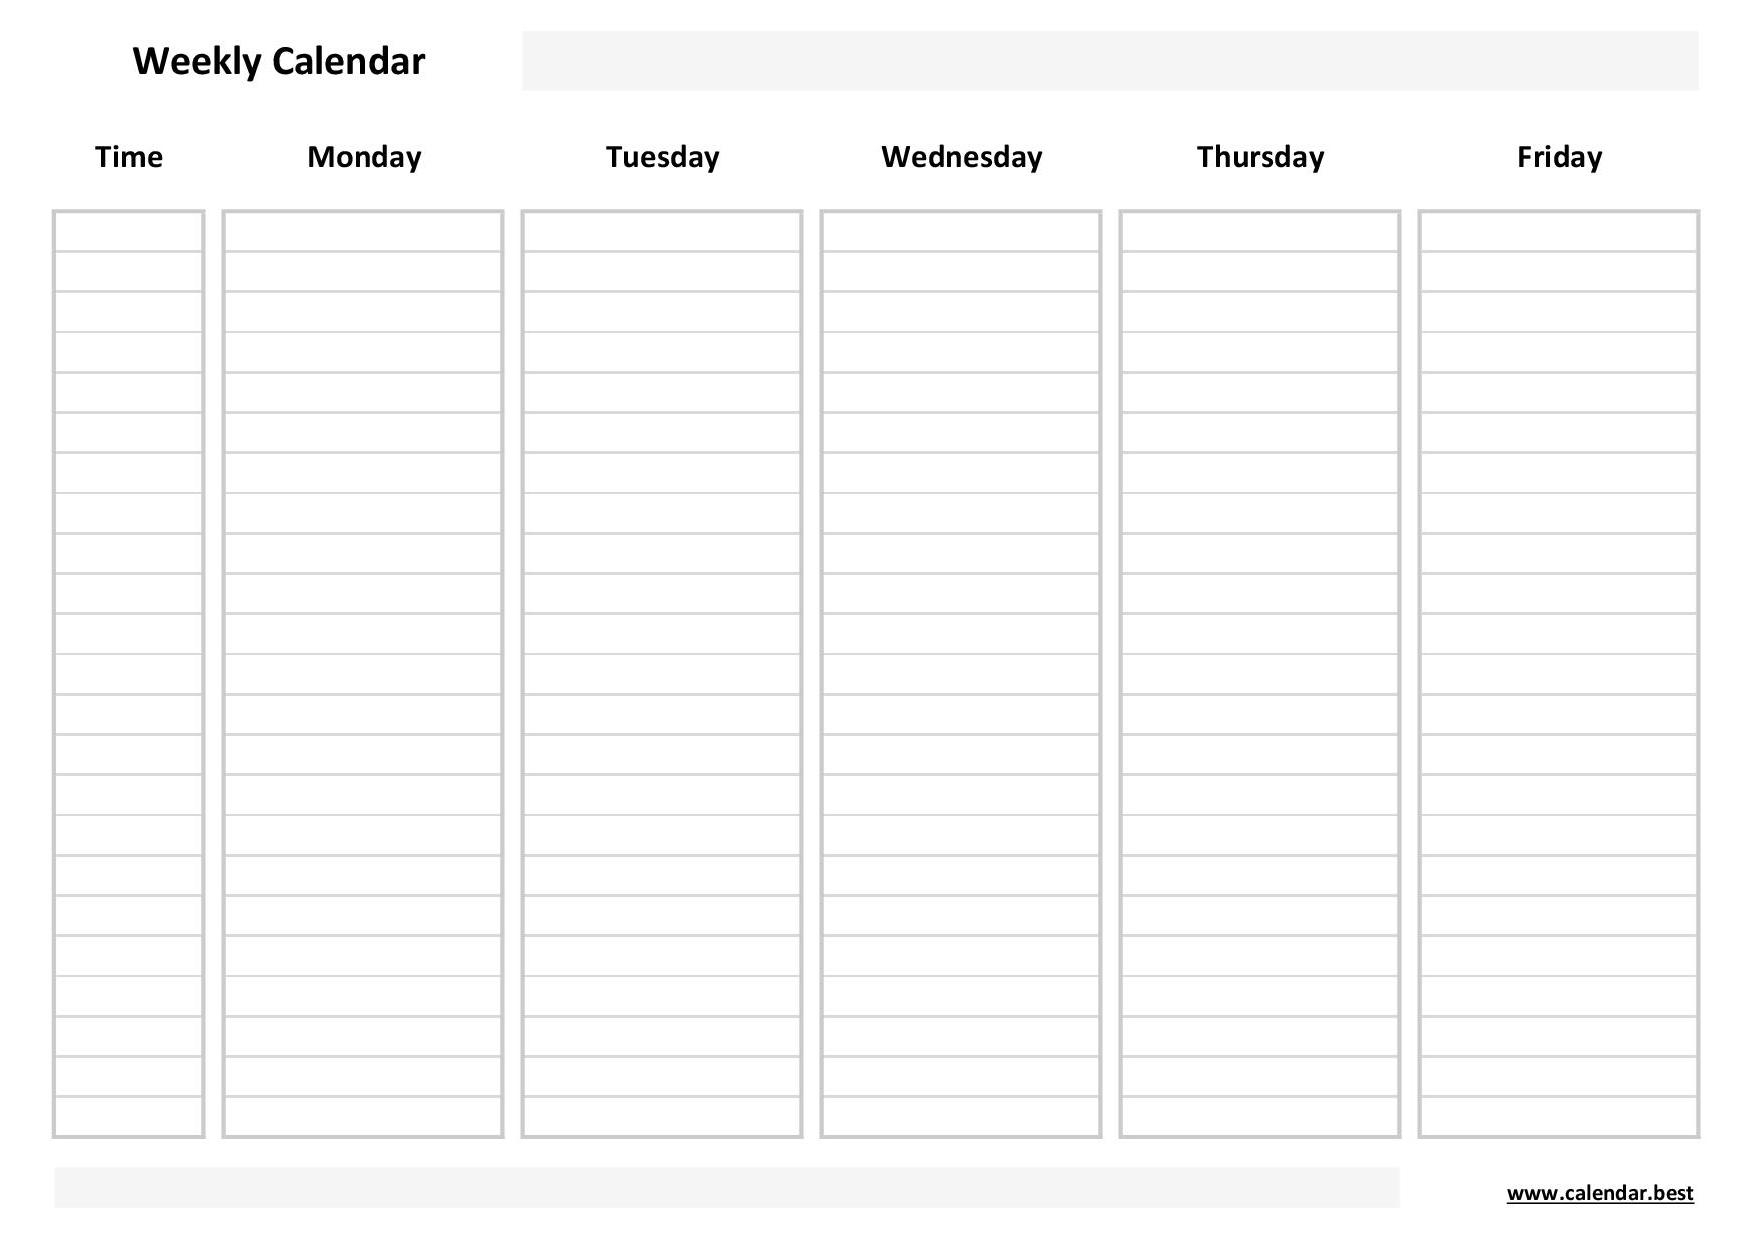 Weekly Calendar, Weekly Schedule -Calendar.best